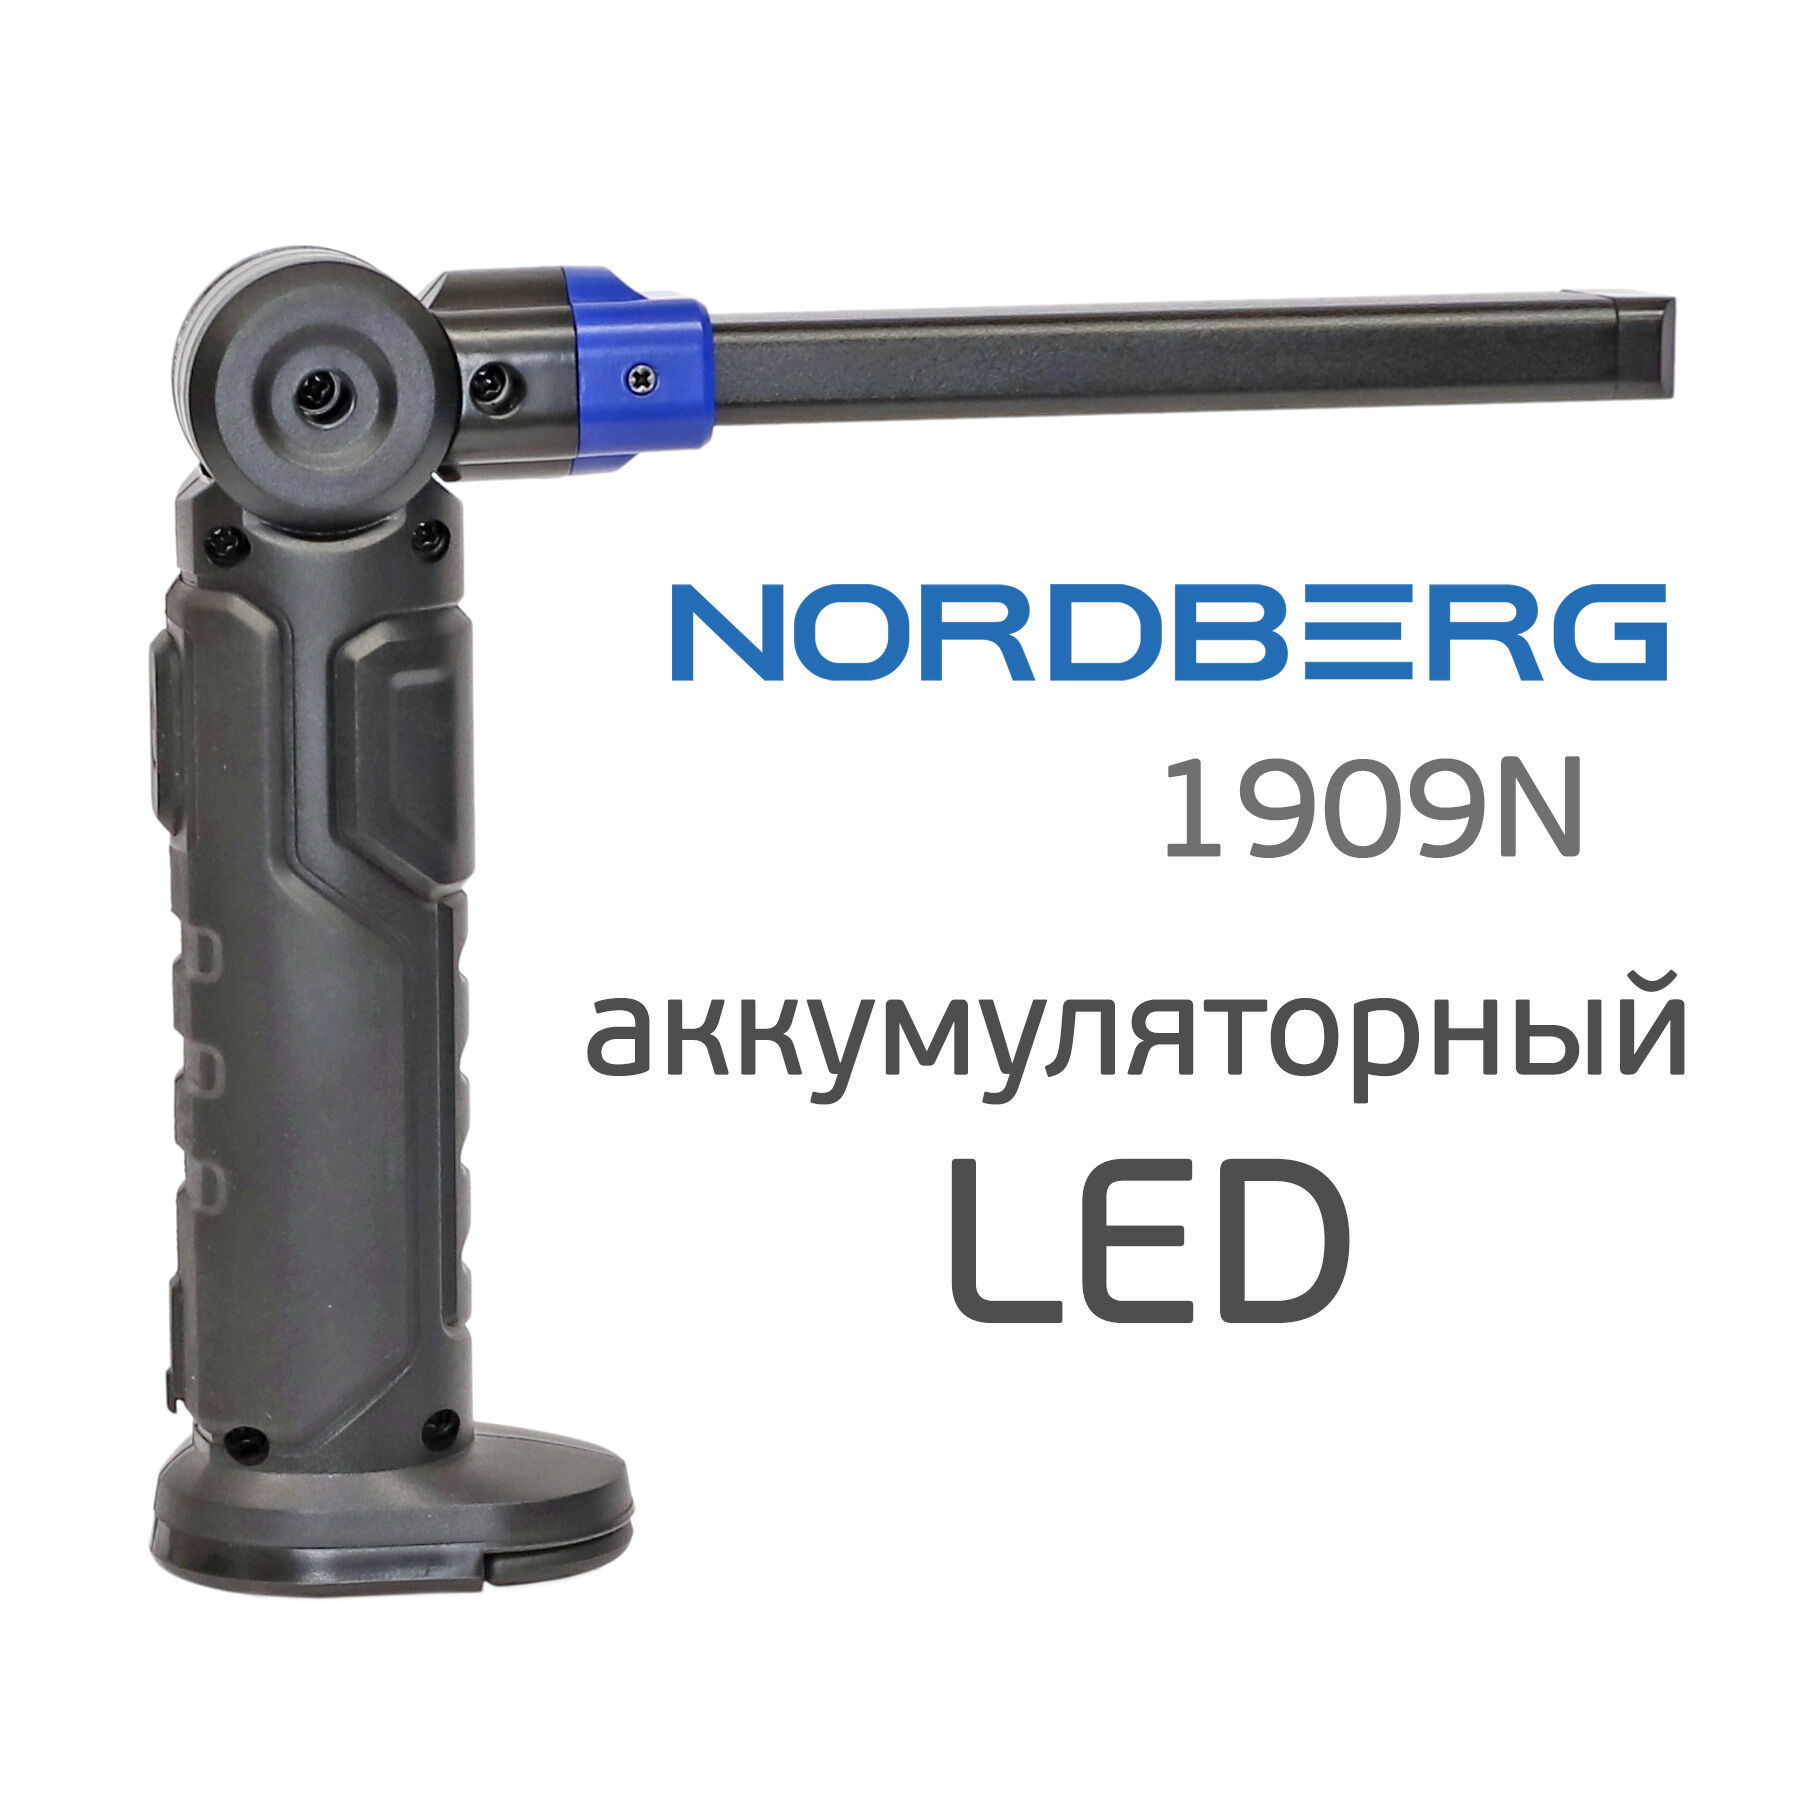 Фонарь светодиодный Nordberg 1909N (LED) аккумуляторный складной с магнитом и подвесом 2